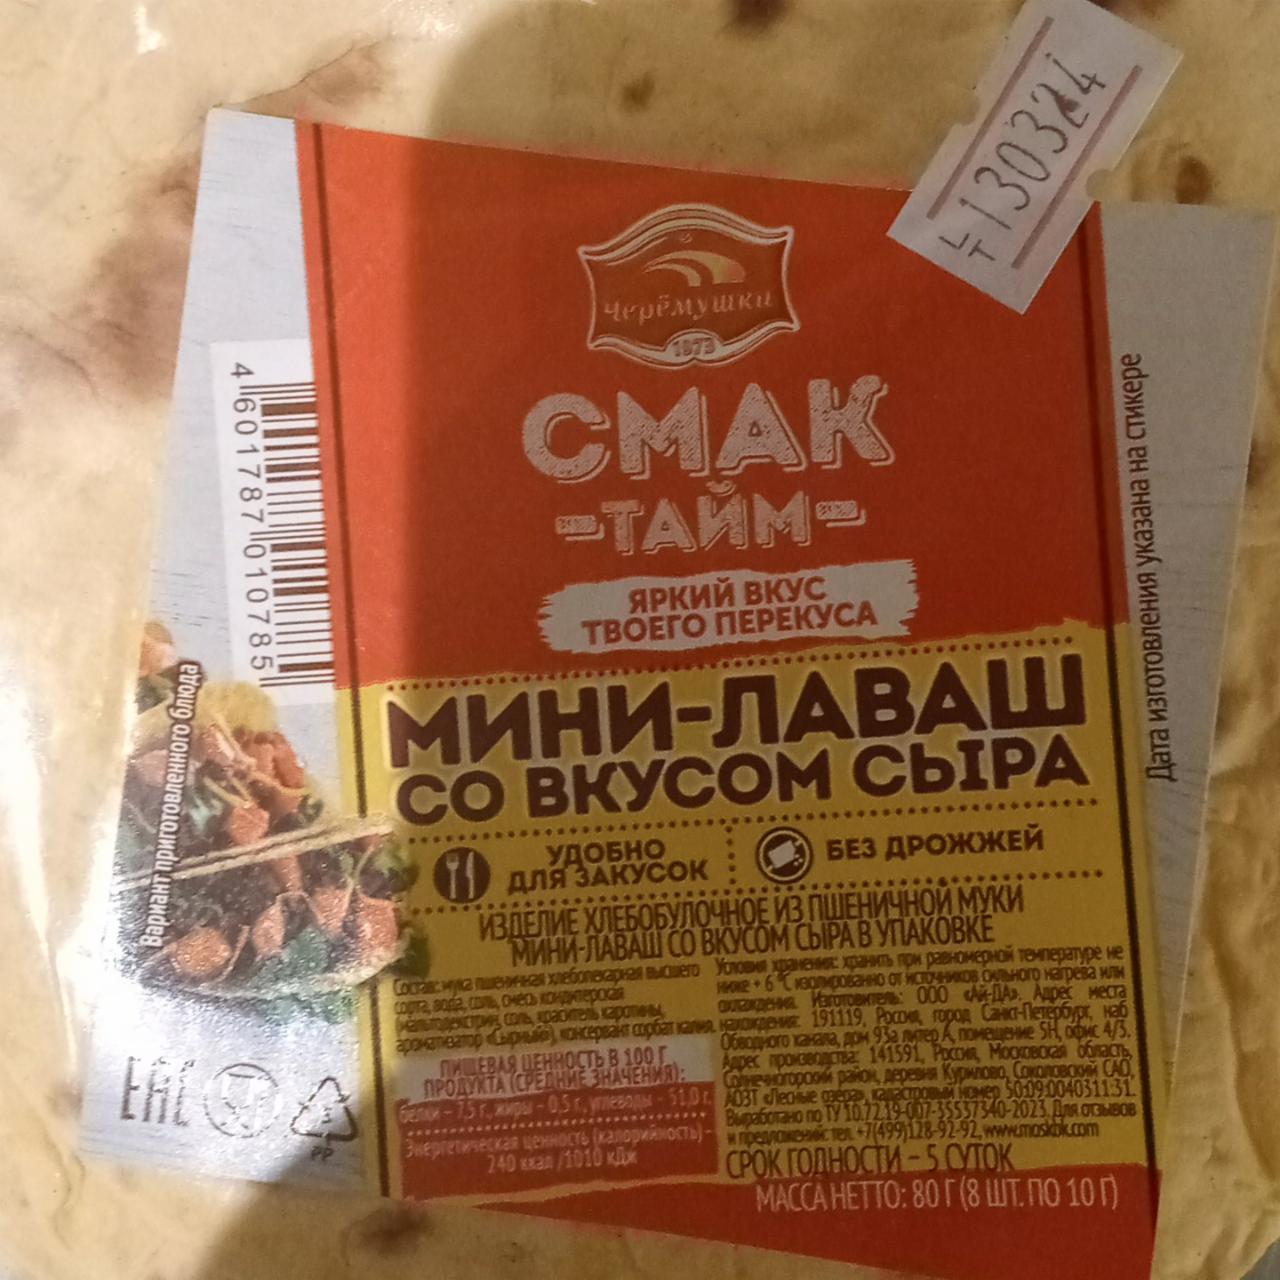 Фото - Лаваш смак-тайм со вкусом сыра Черёмушки